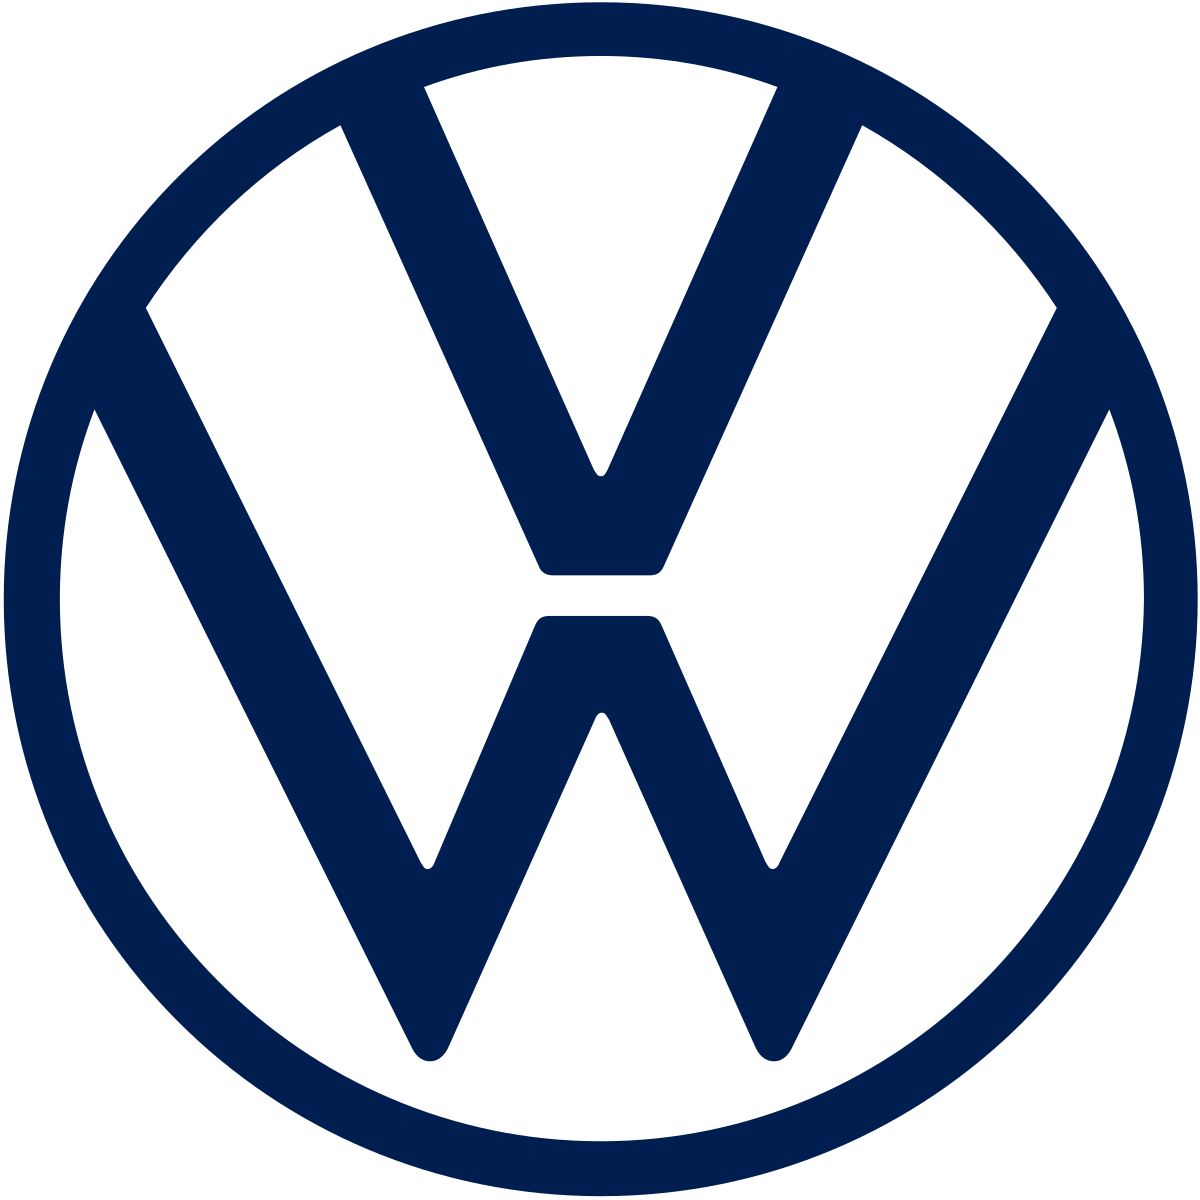 Image Source: Volkswagen/Logo